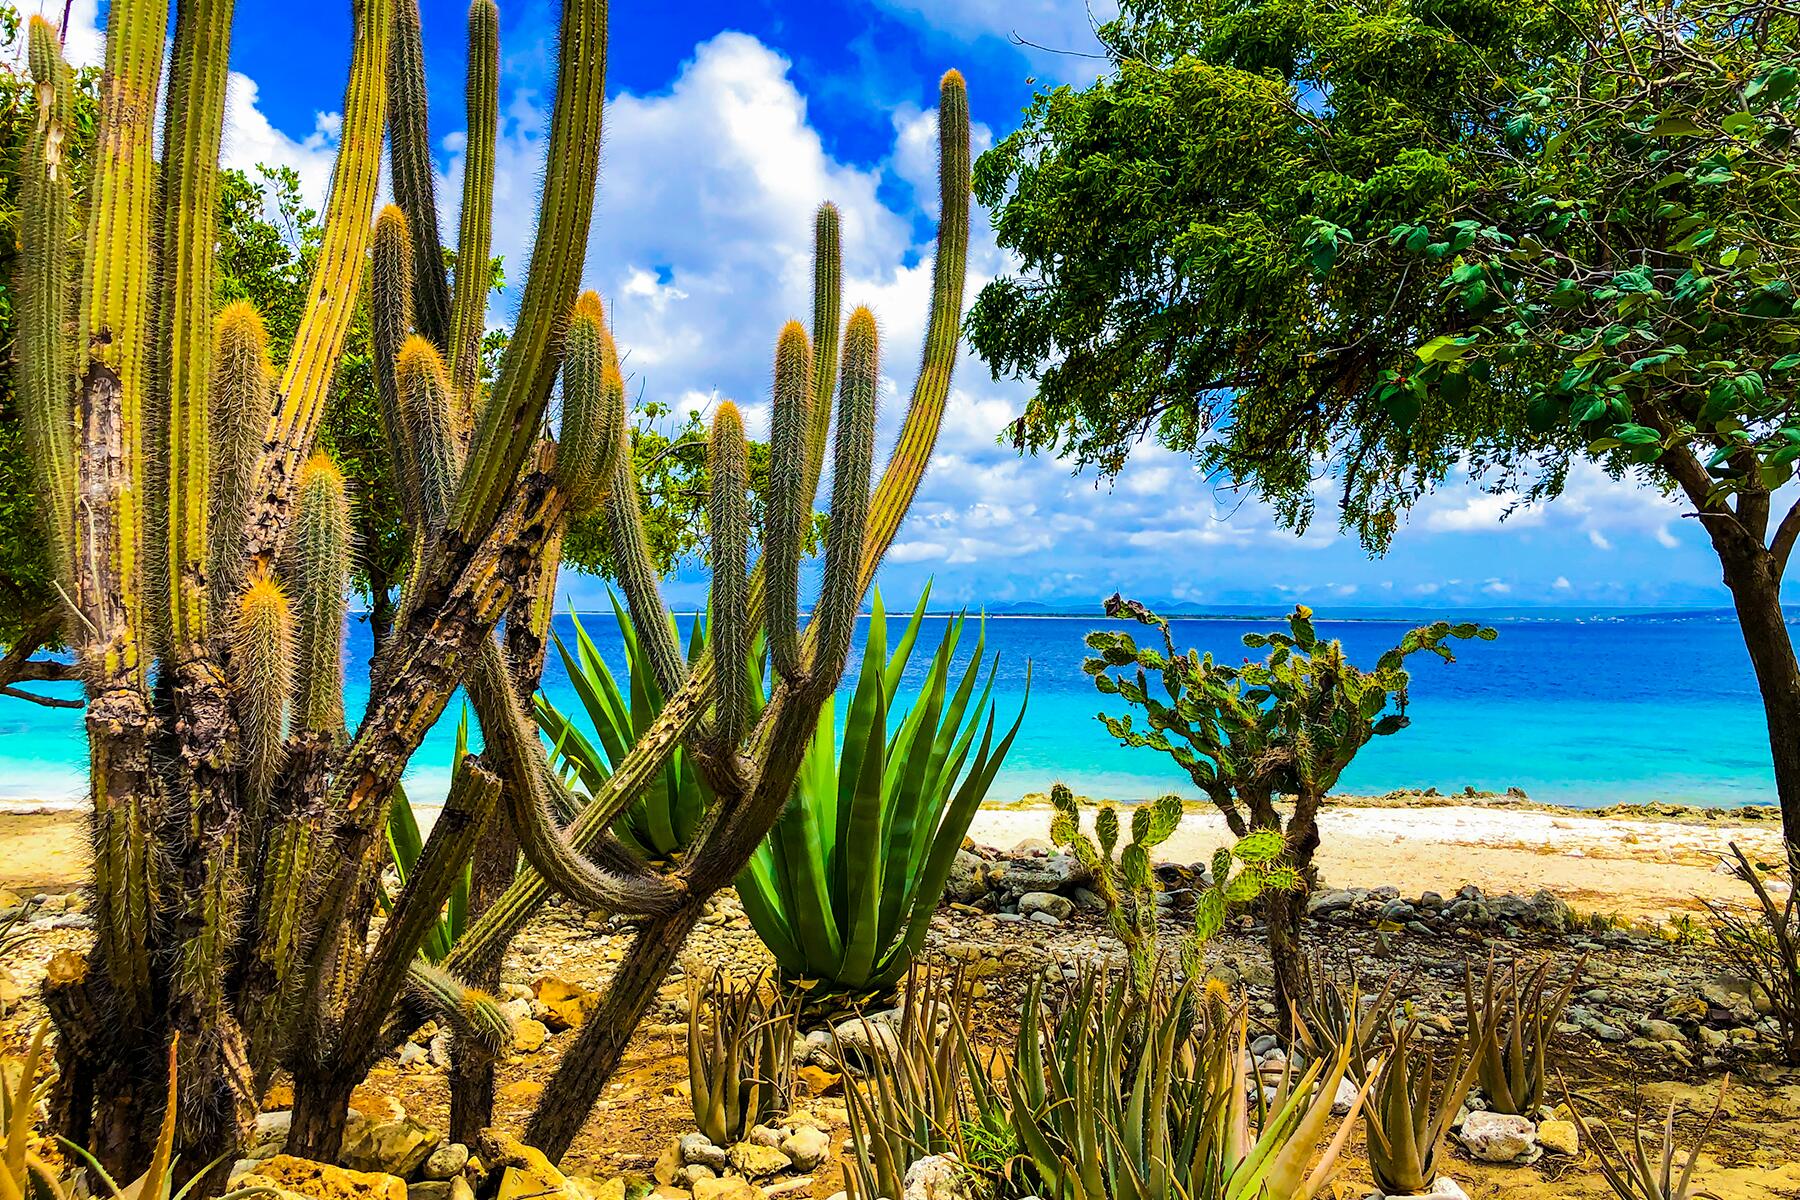 1-BONAIRE-Bonaire beach with cacti